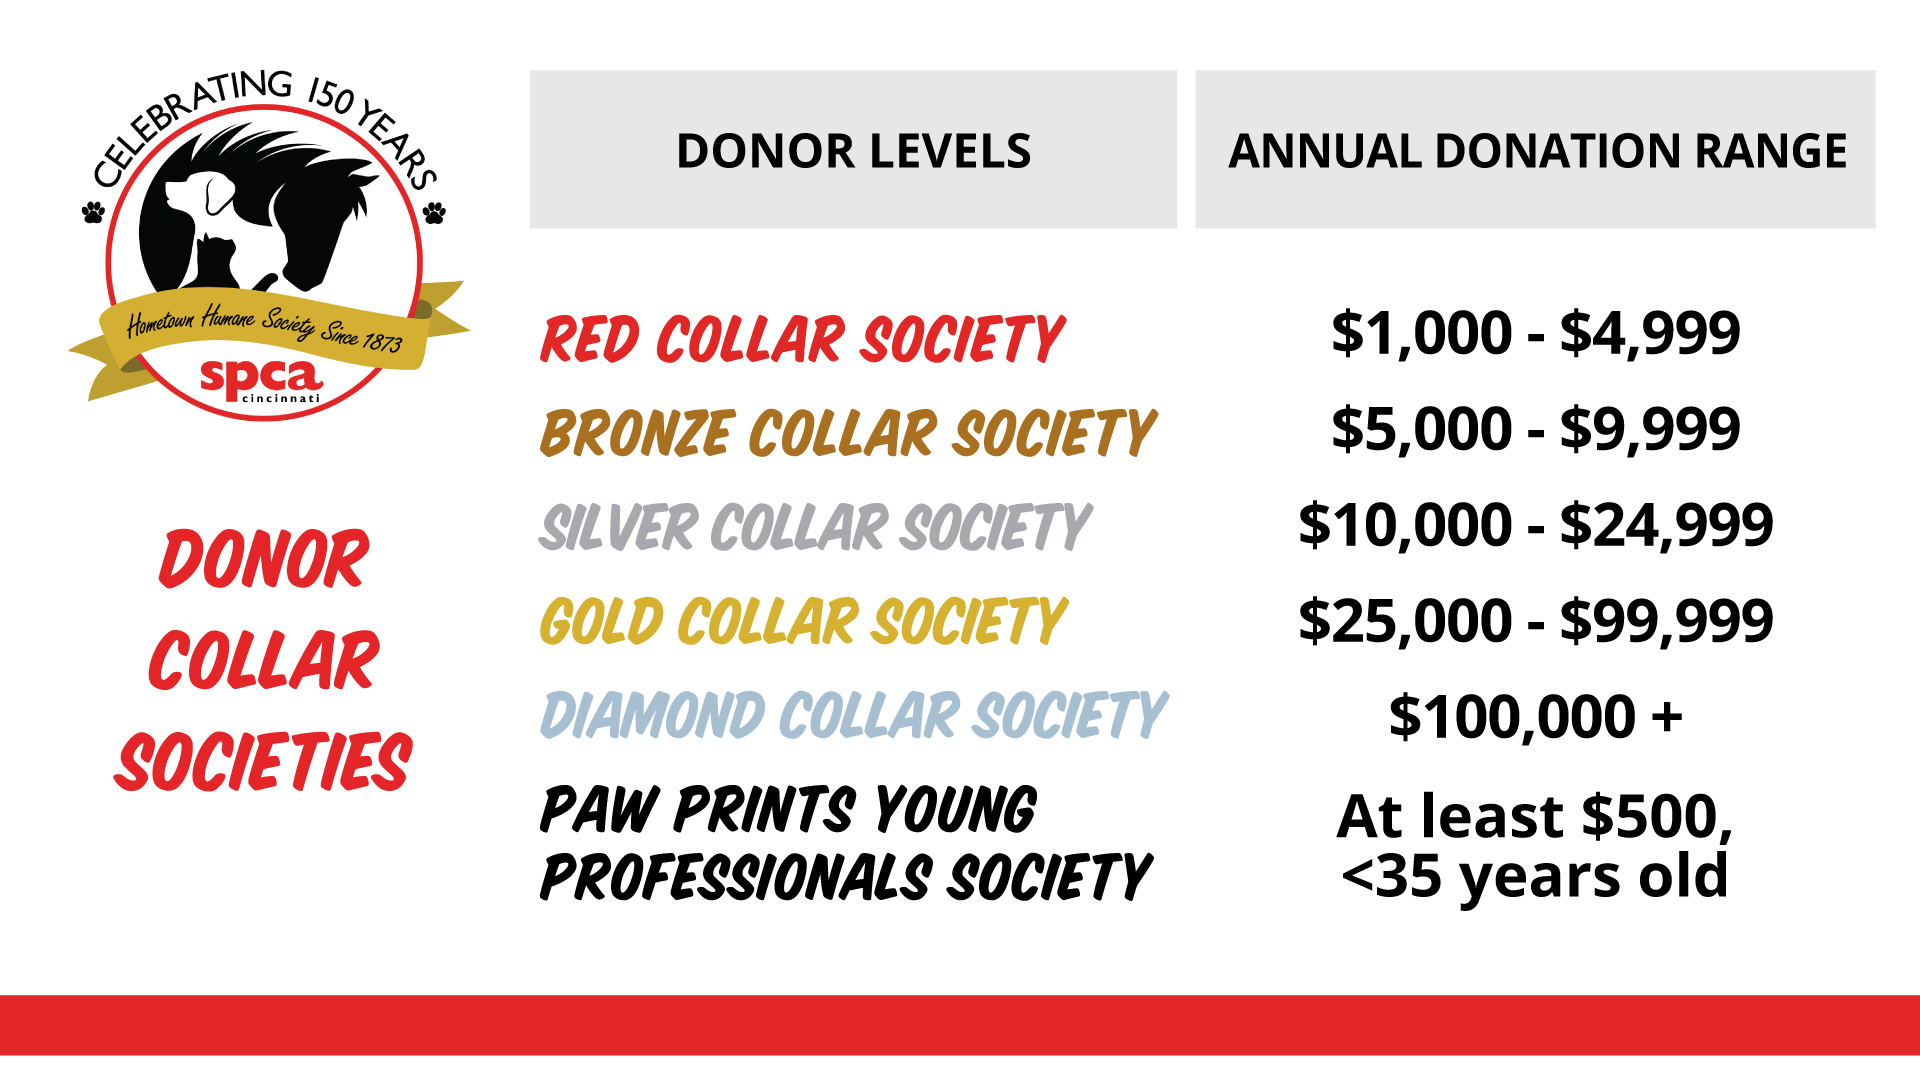 Donor collar societies